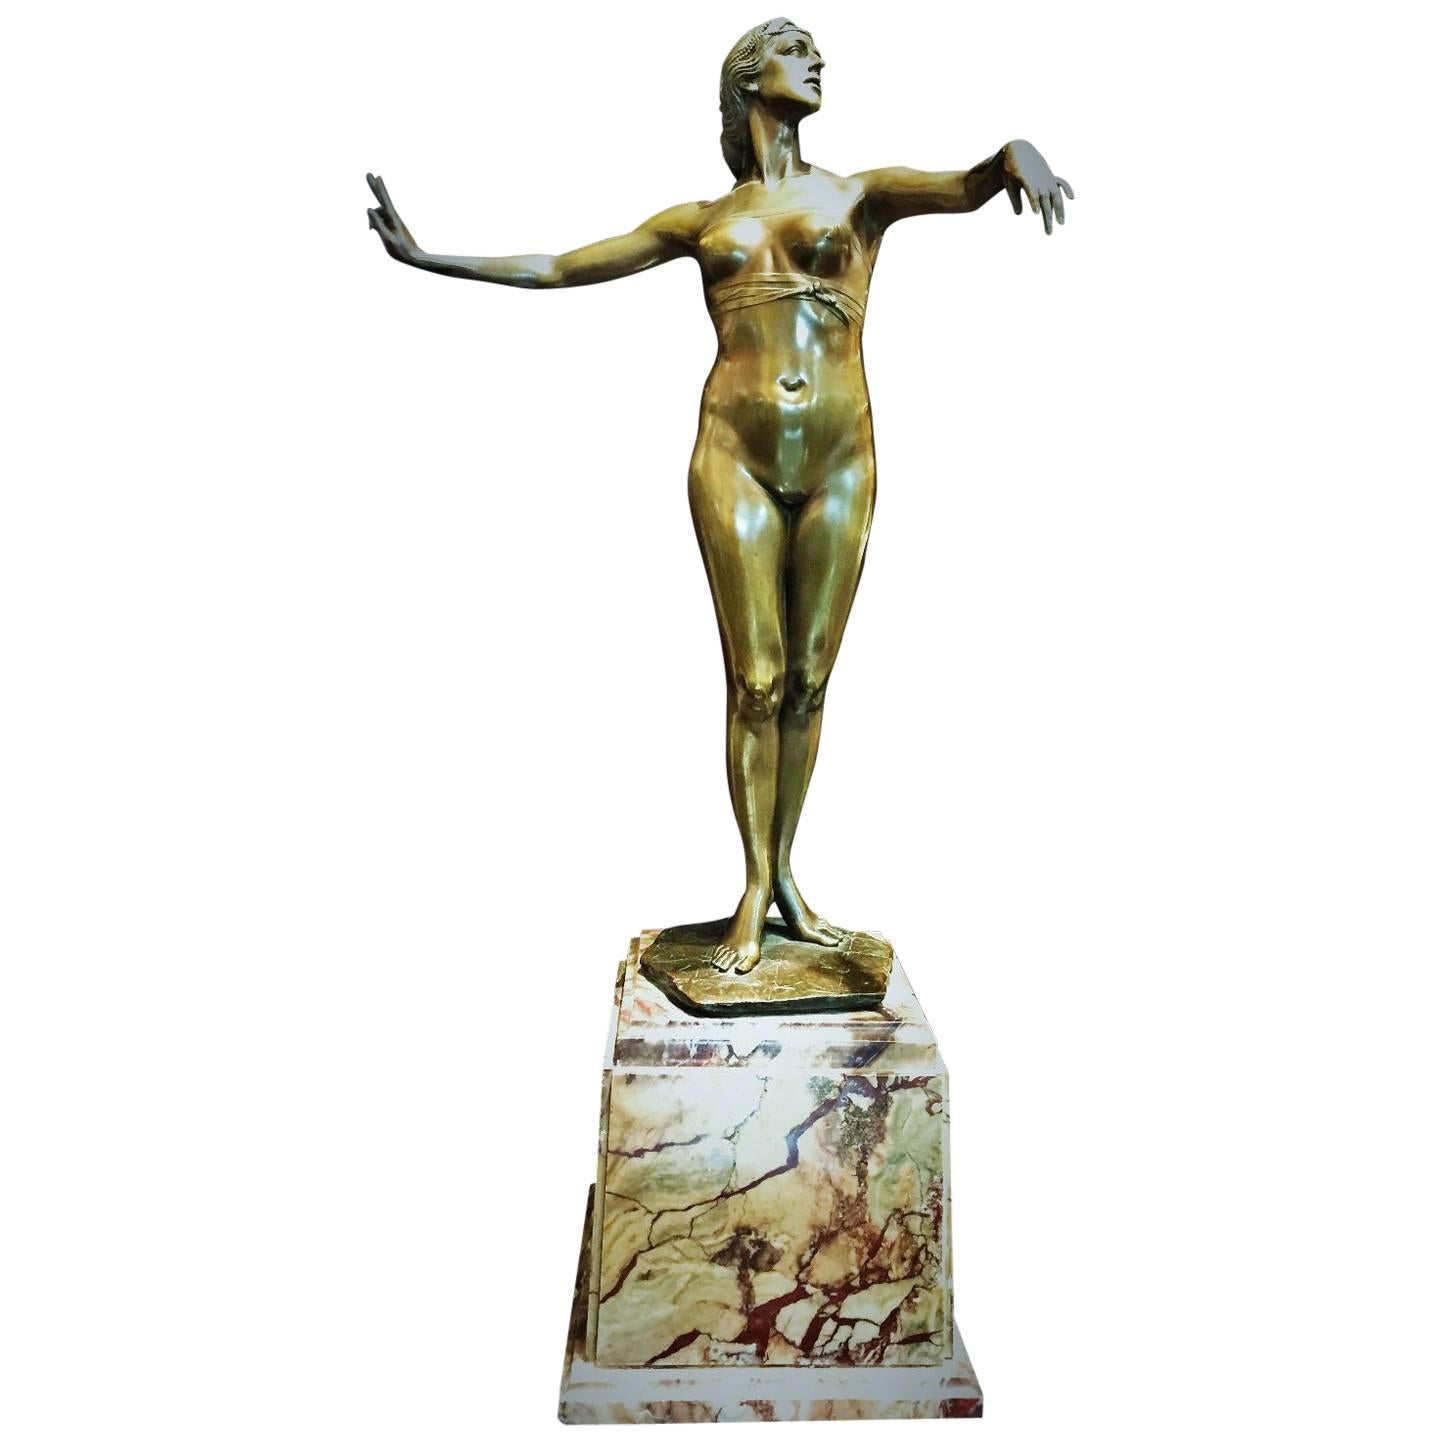 Edmund Gomanski, Isadora Duncan, German Jugendstil Bronze Sculpture, 1903